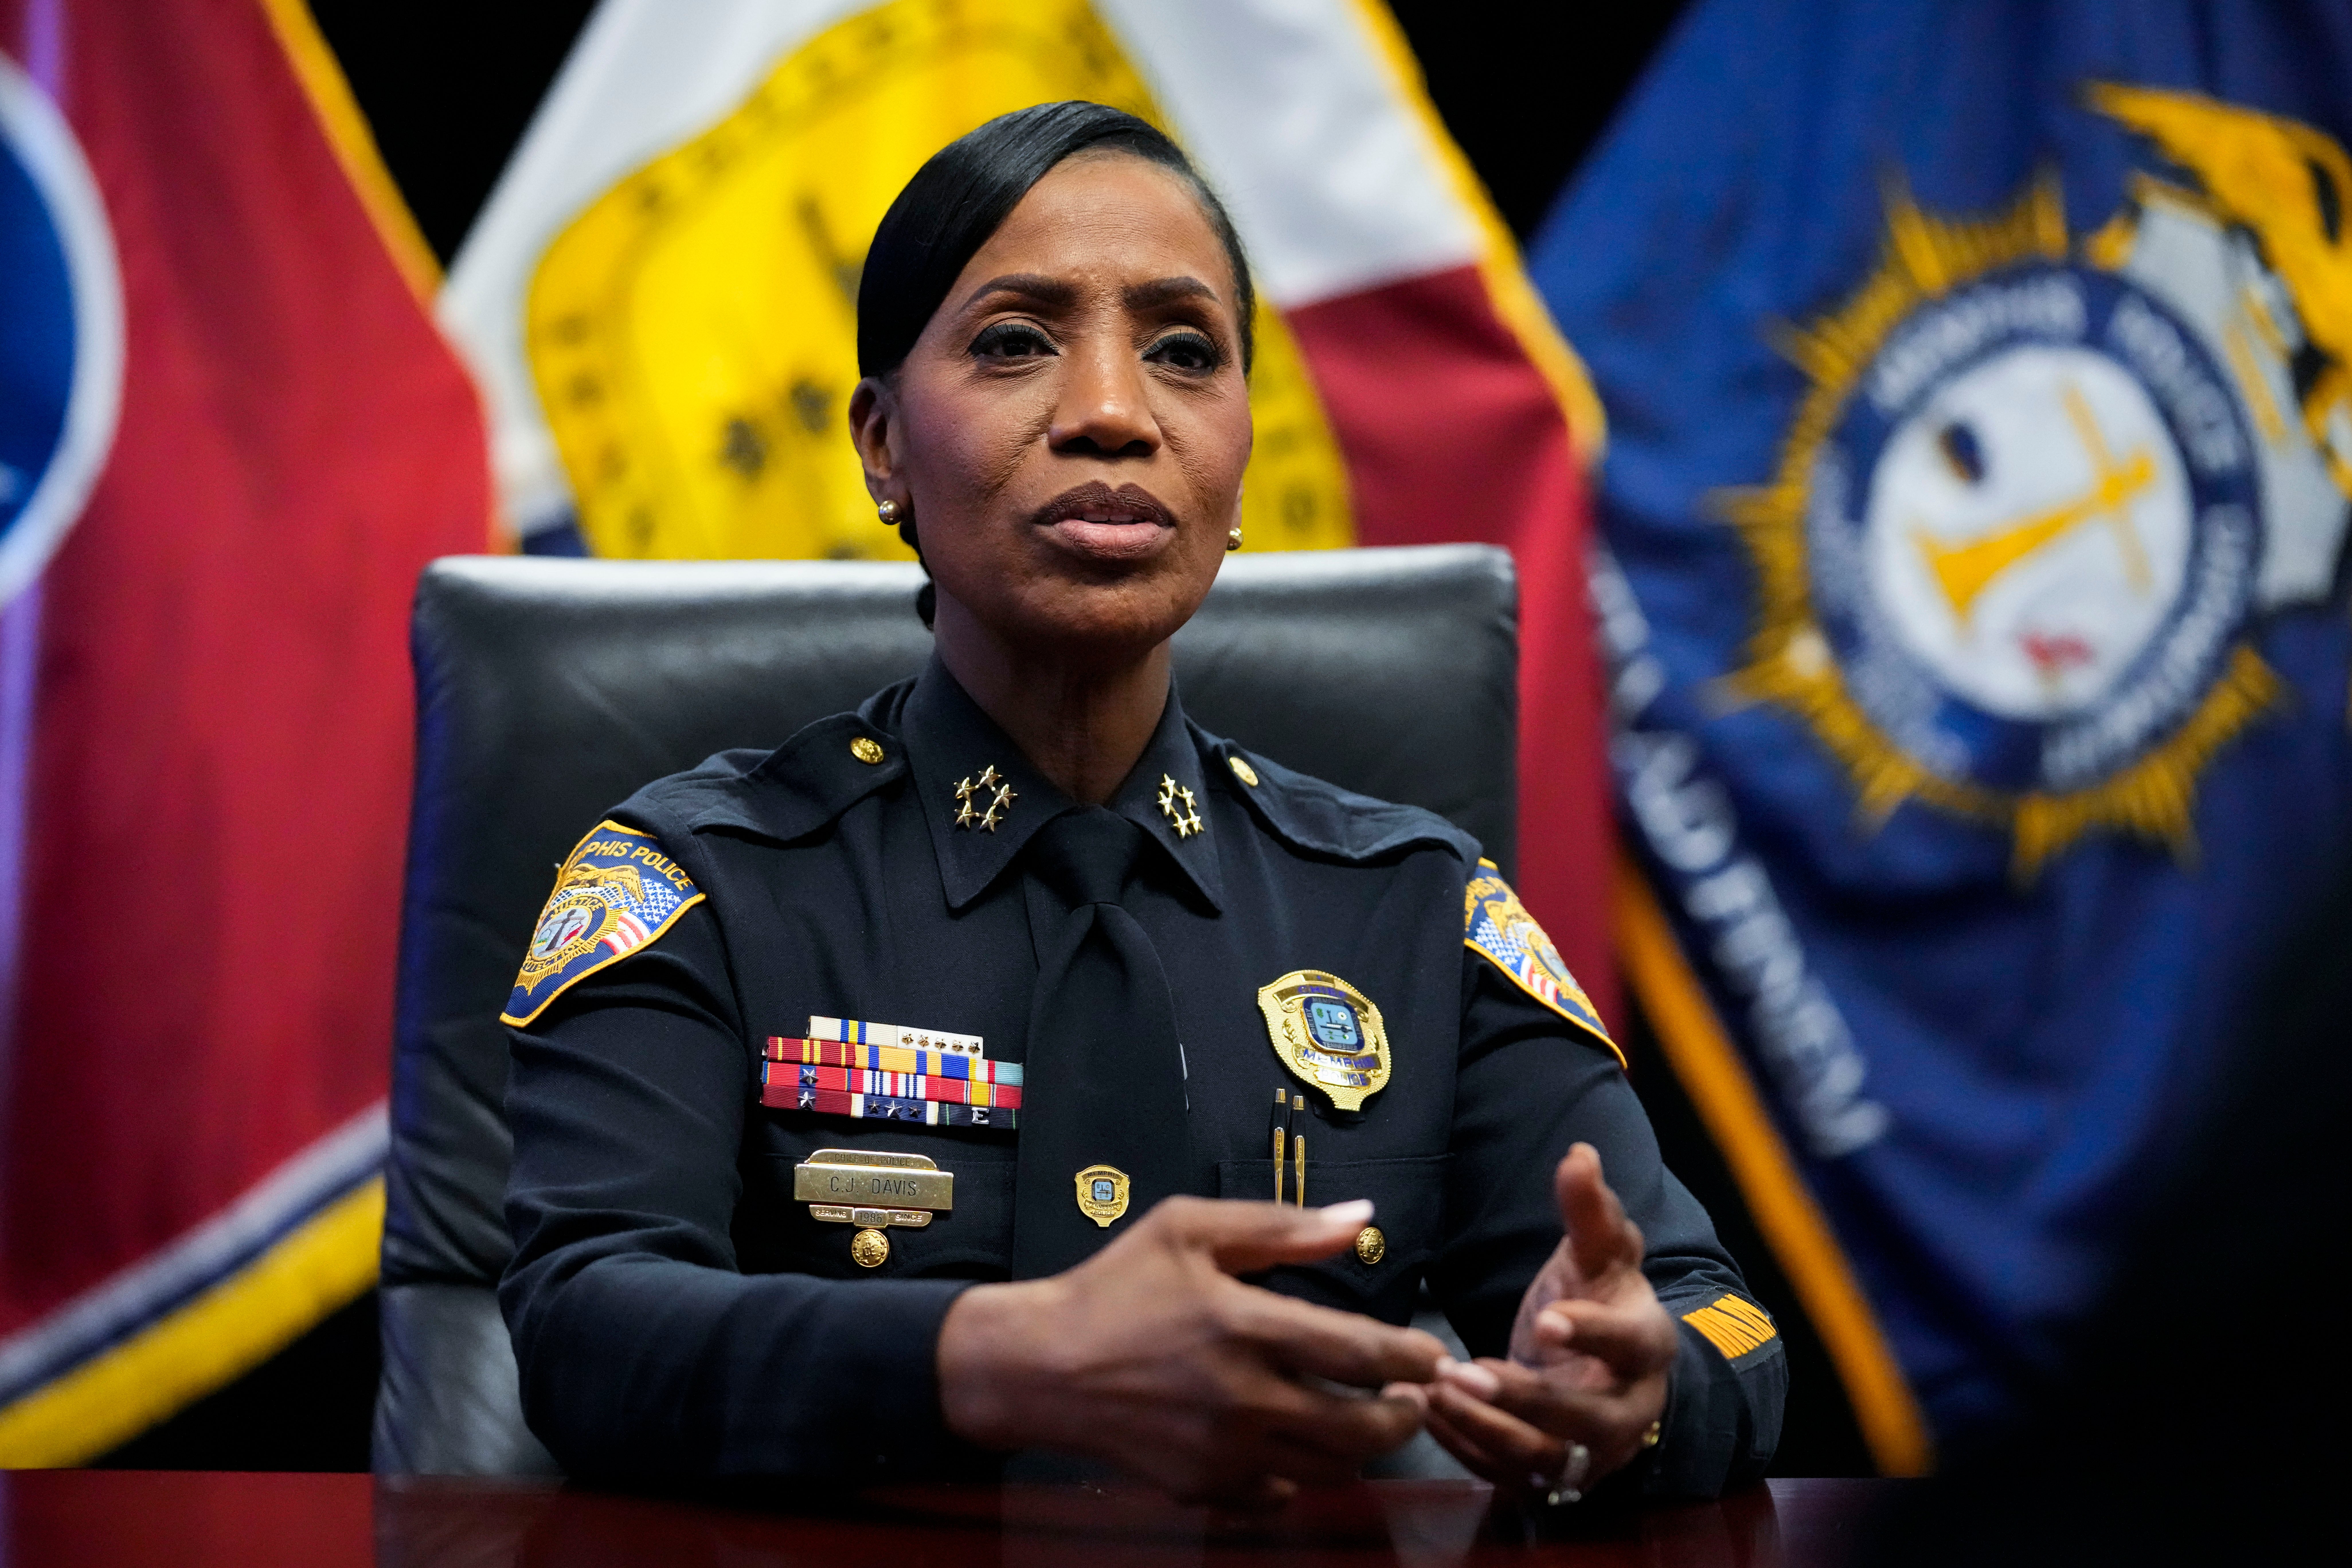 Memphis Police Chief Cerelyn Davis